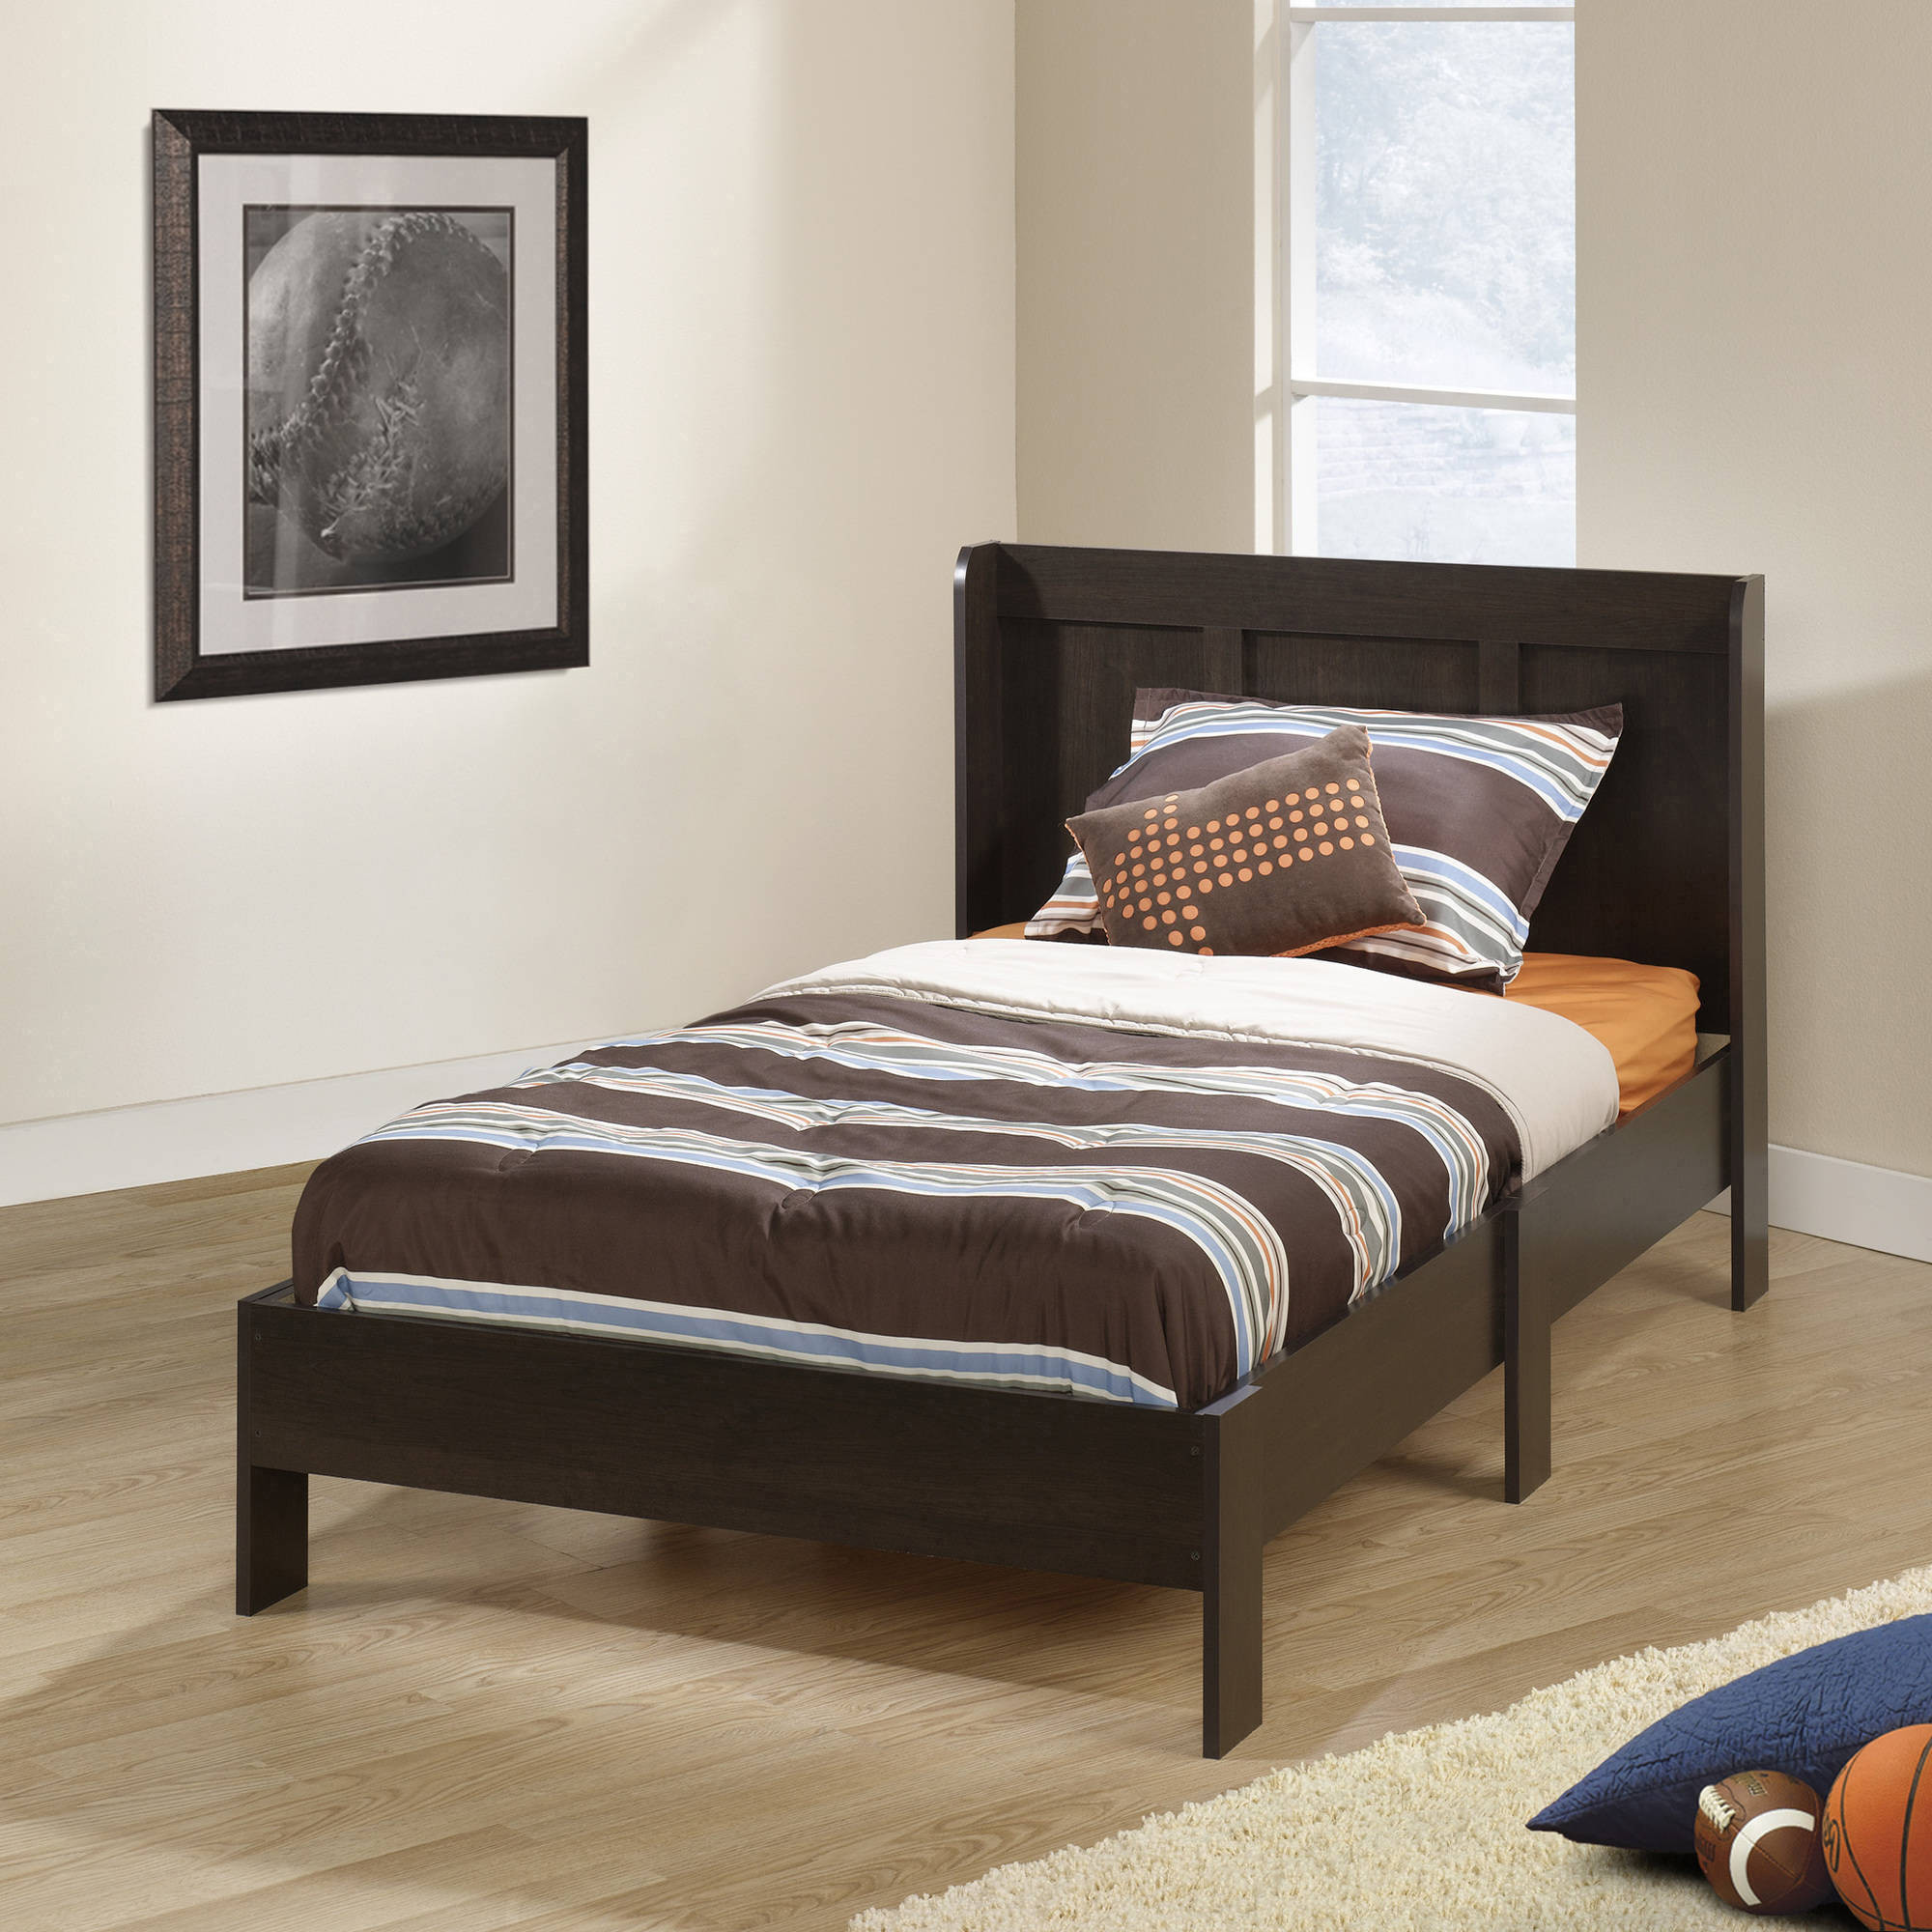 Walmart Kids Bedroom
 Twin Bedroom Furniture Sets Walmart